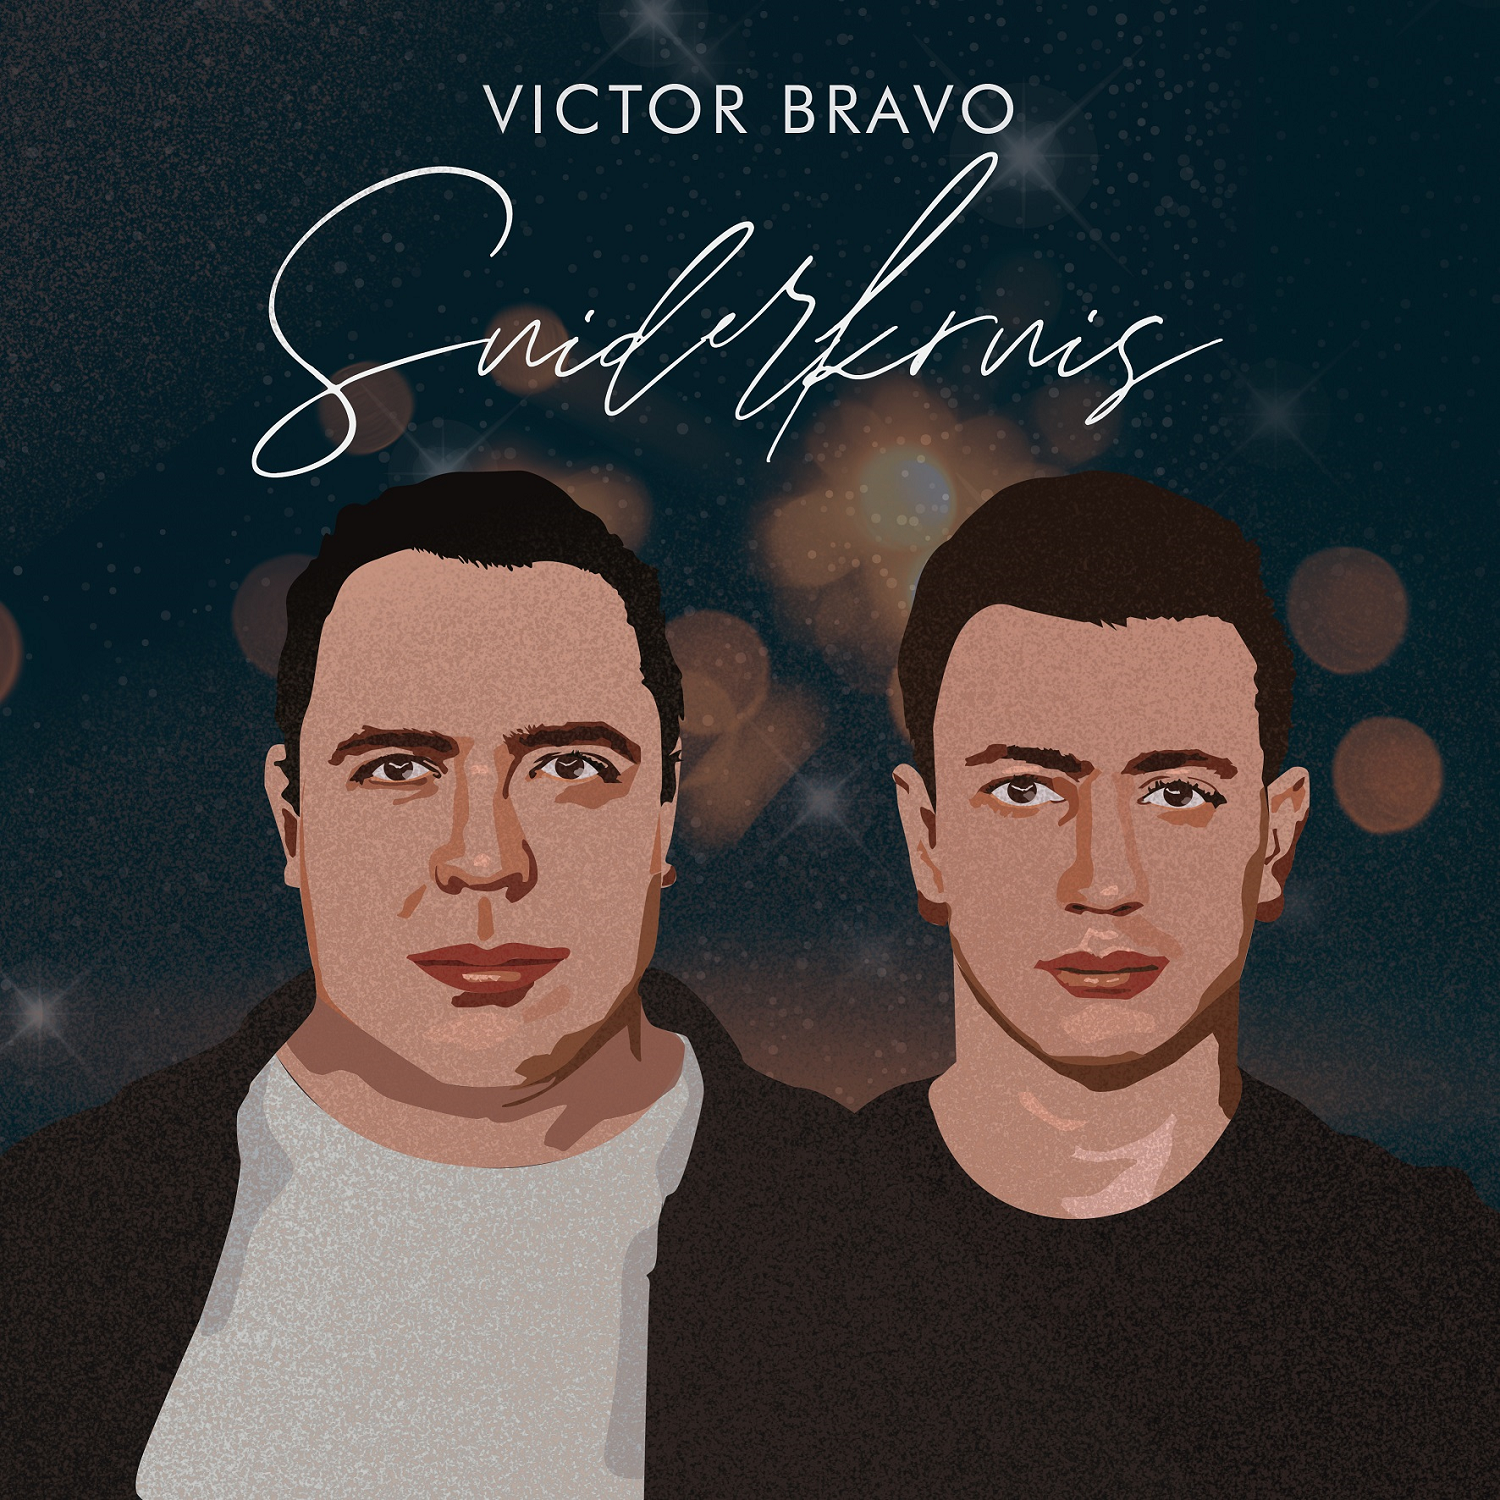 Duo, Victor Bravo, celebrates their heritage with new single, Suiderkruis